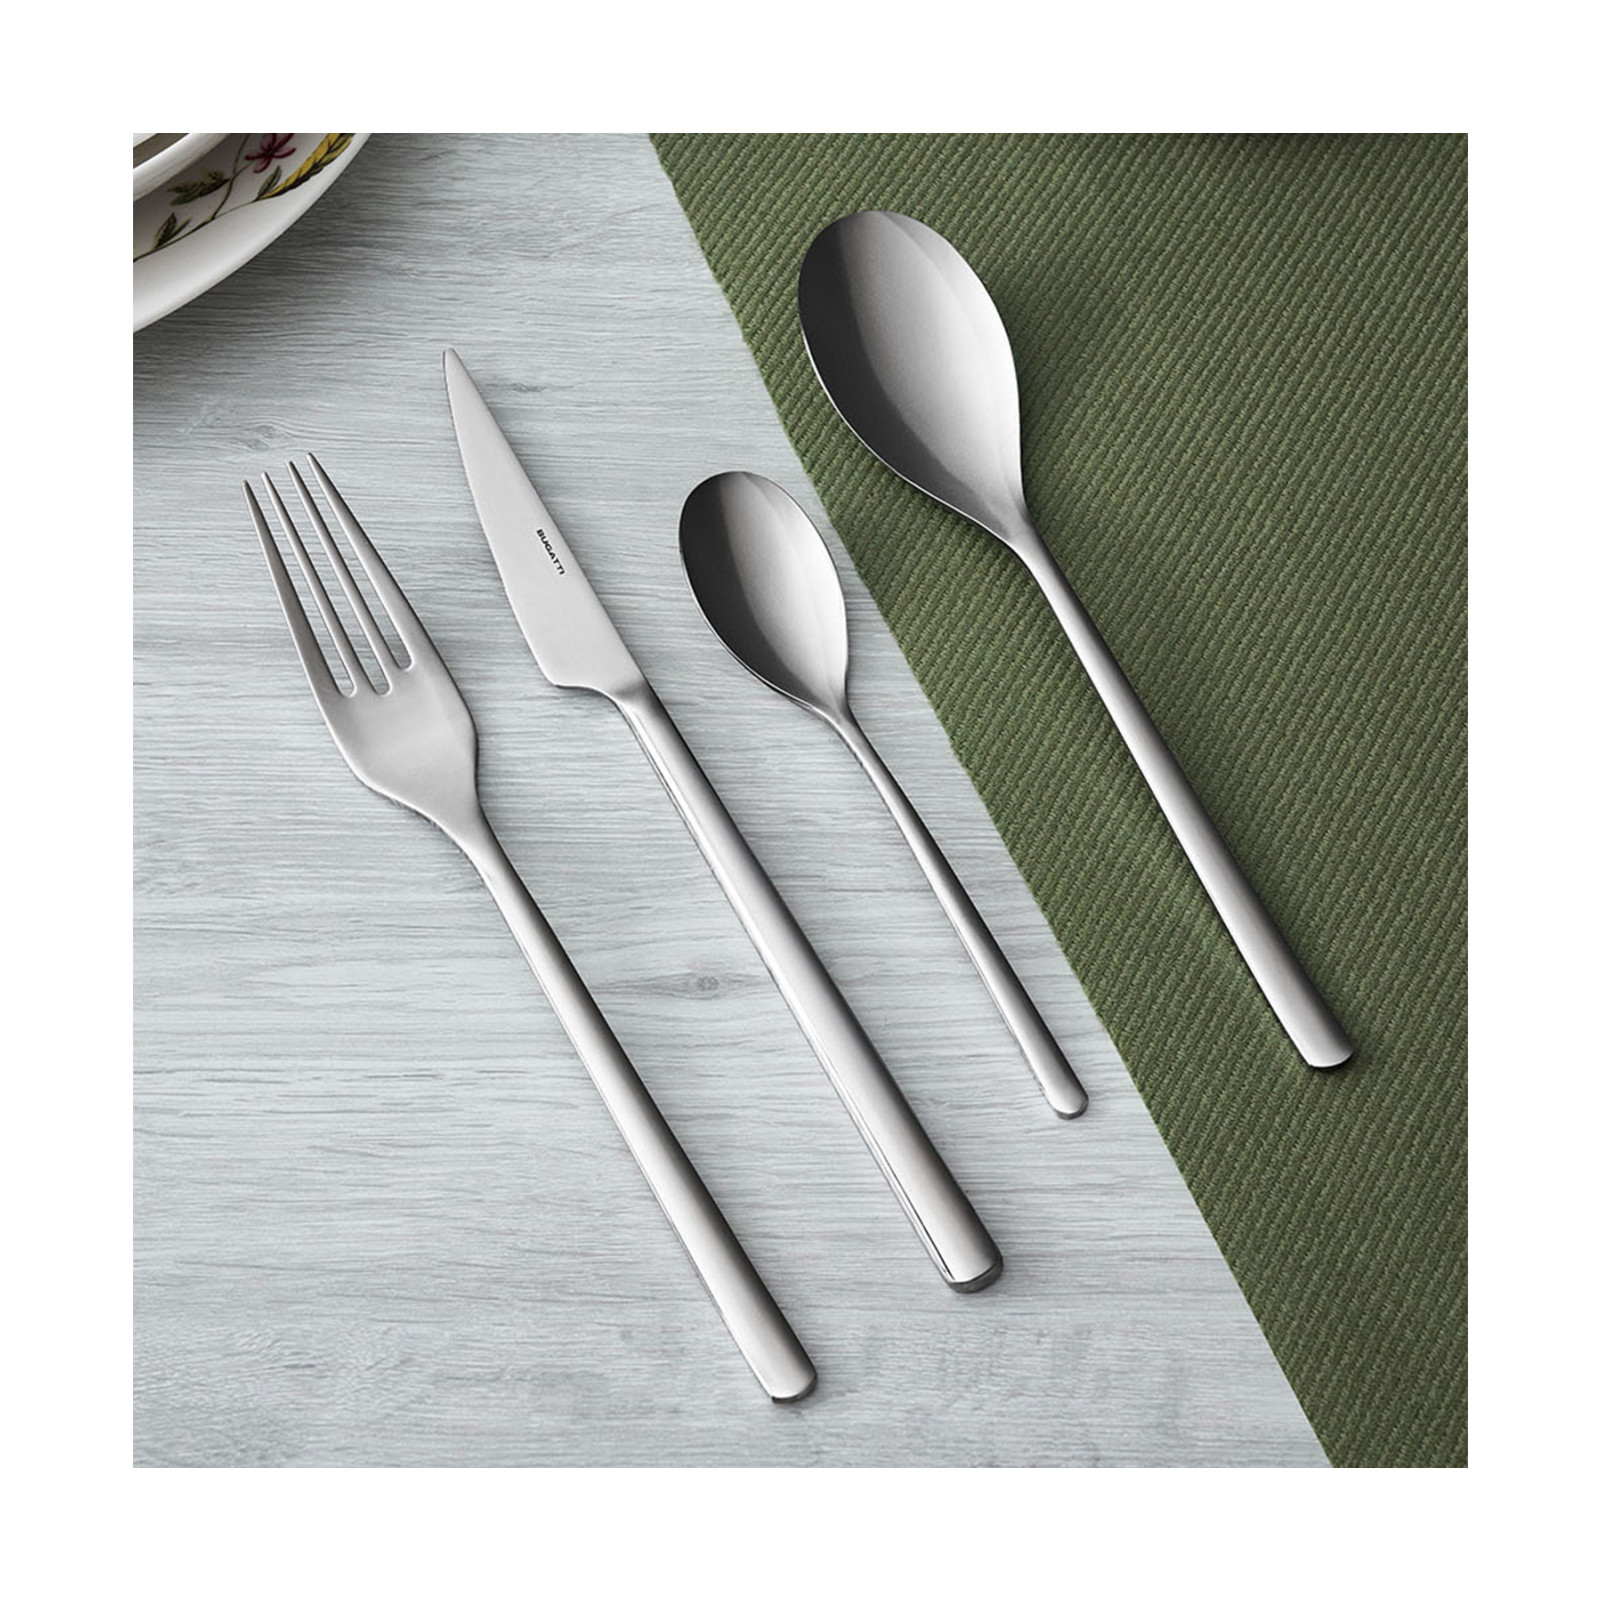 Bugatti - Designer cutlery, small kitchen appliances and home accessories